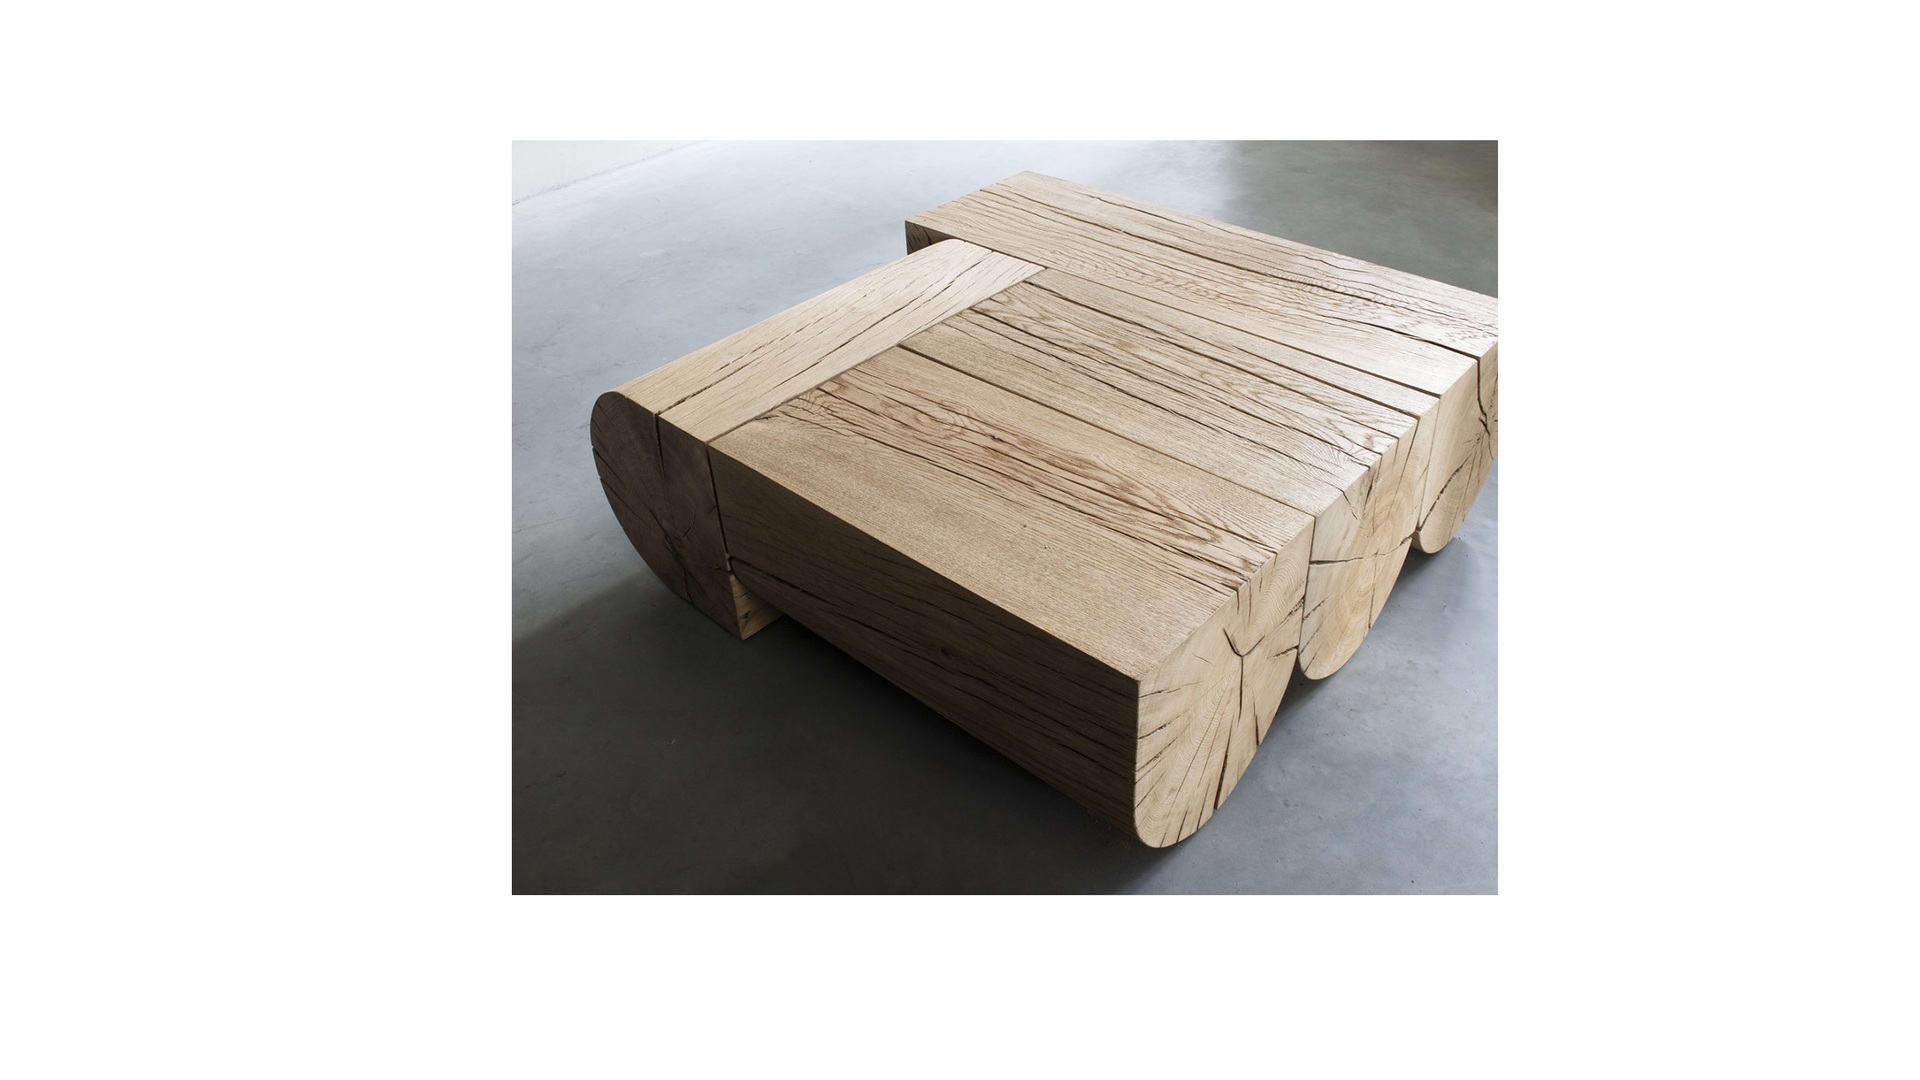 Adjacencies-square-coffee-table-06-1280x981 klein.jpg